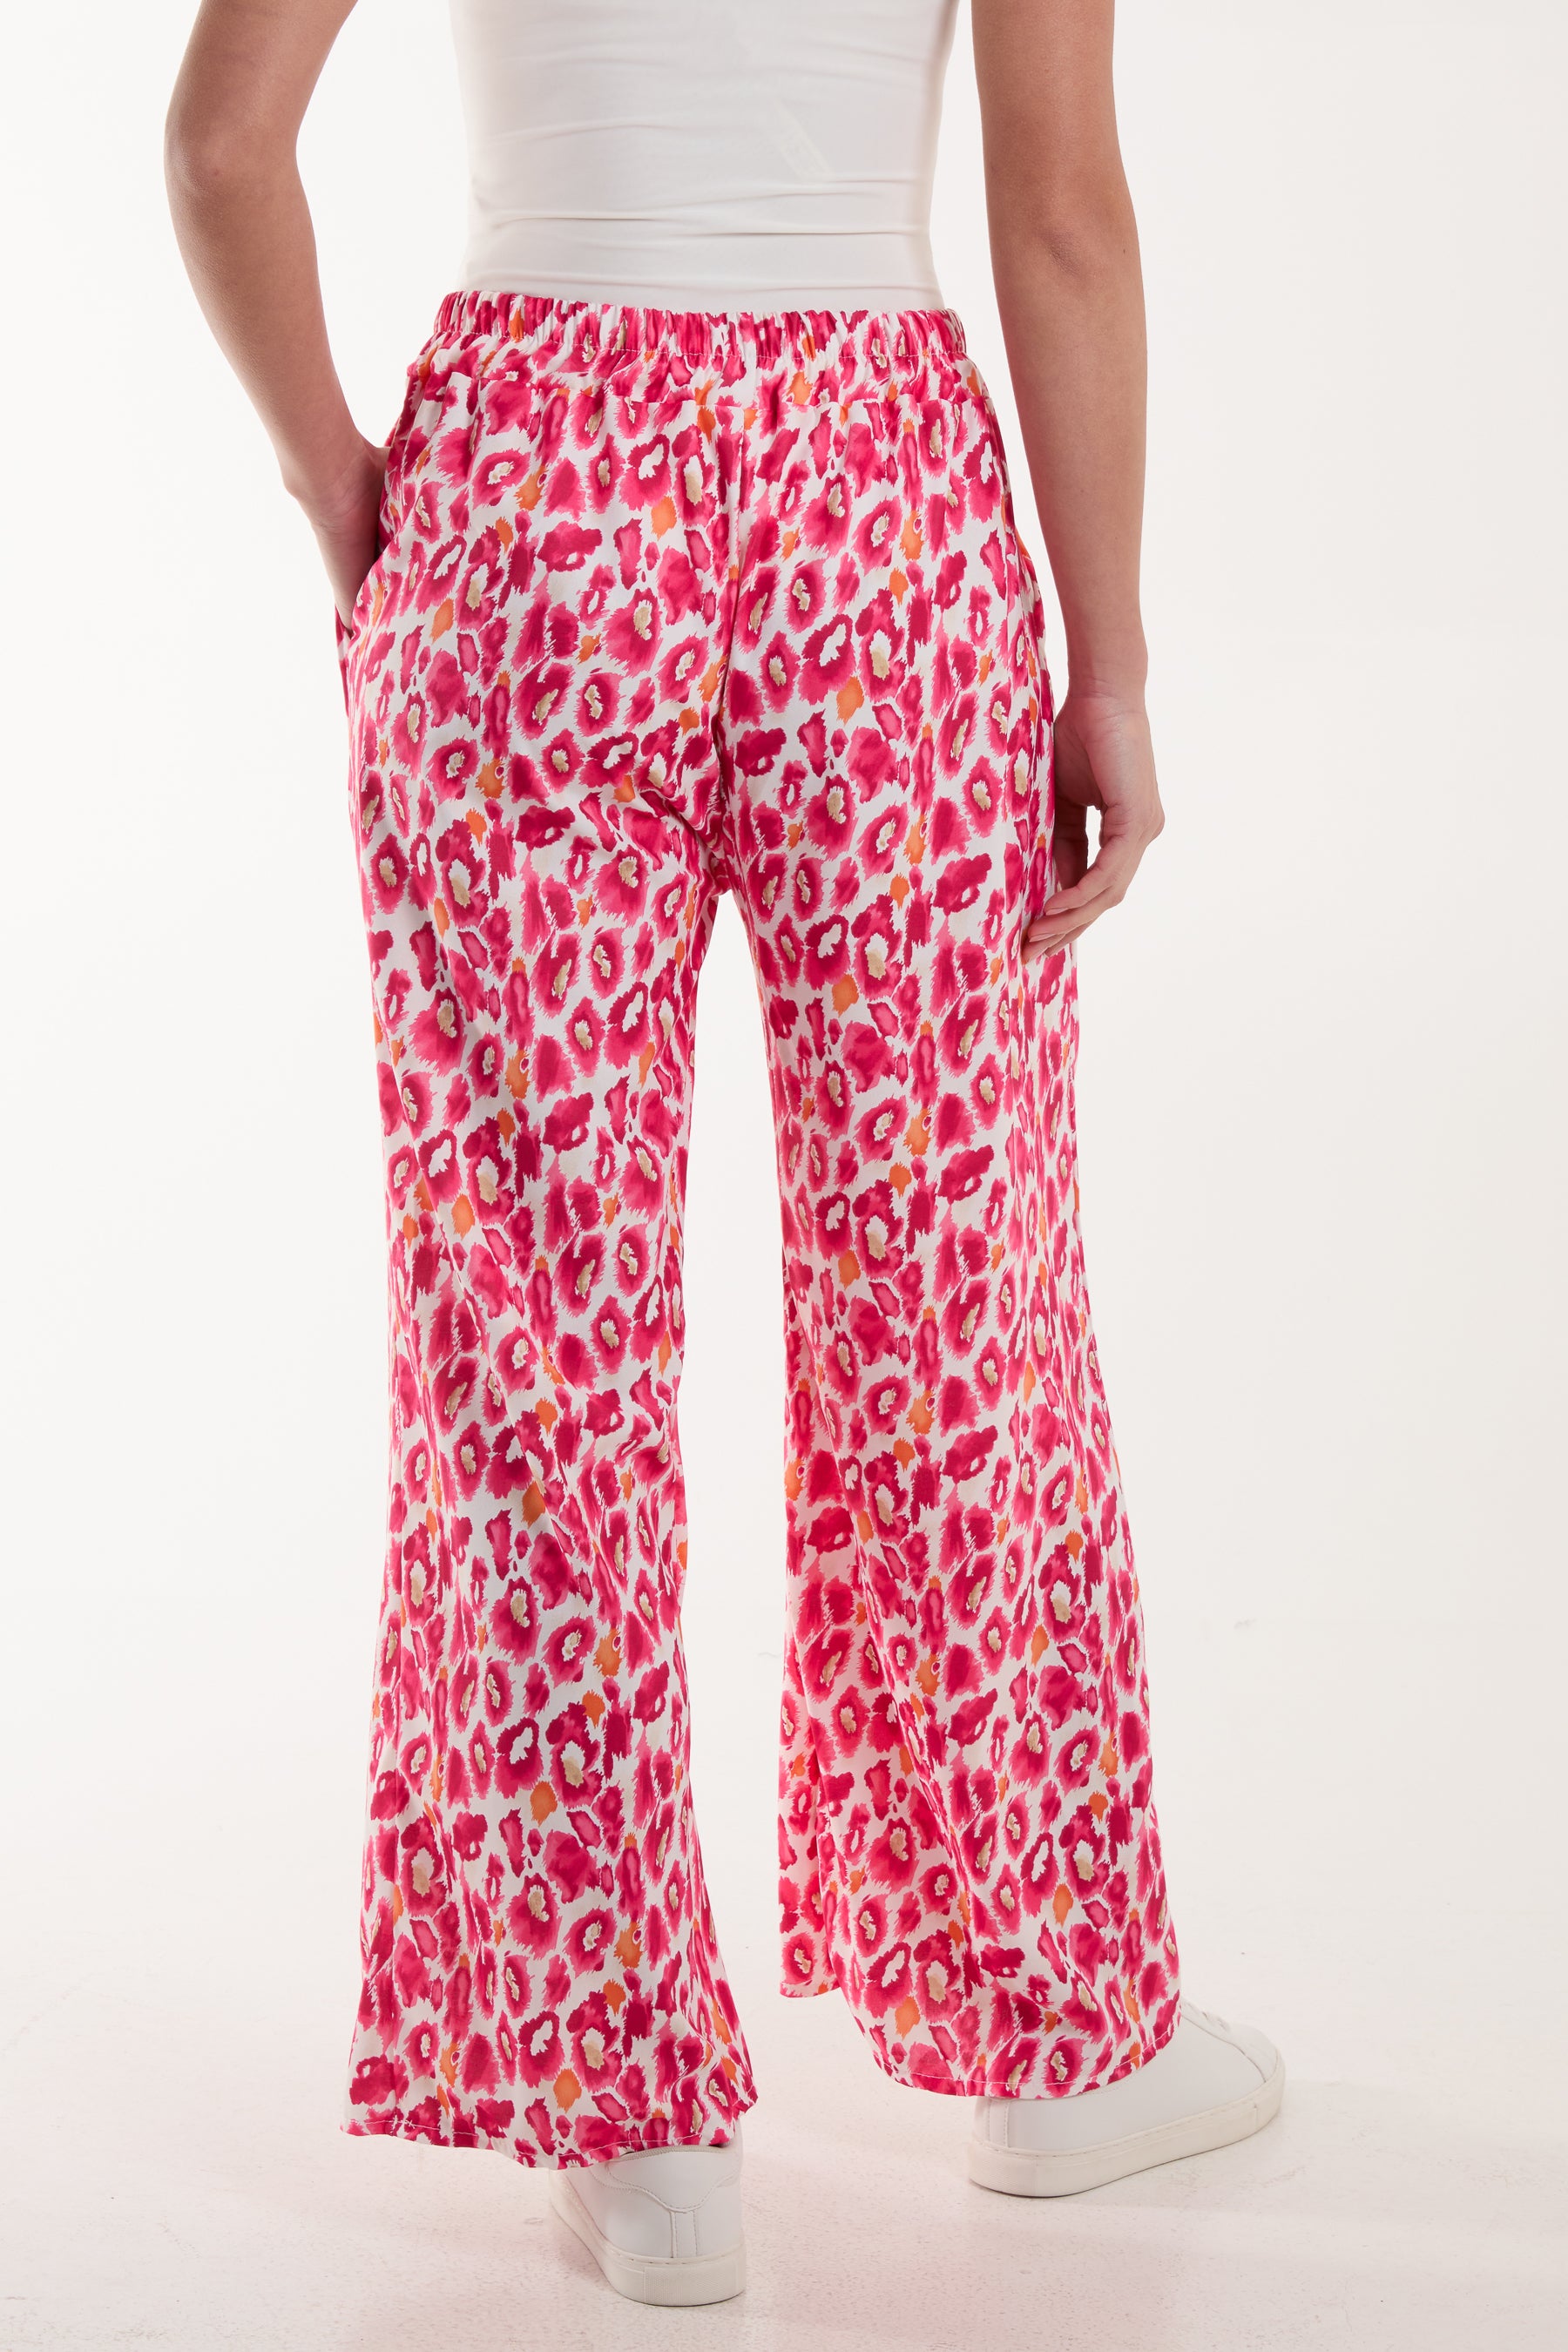 Leopard Print Culotte Trouser